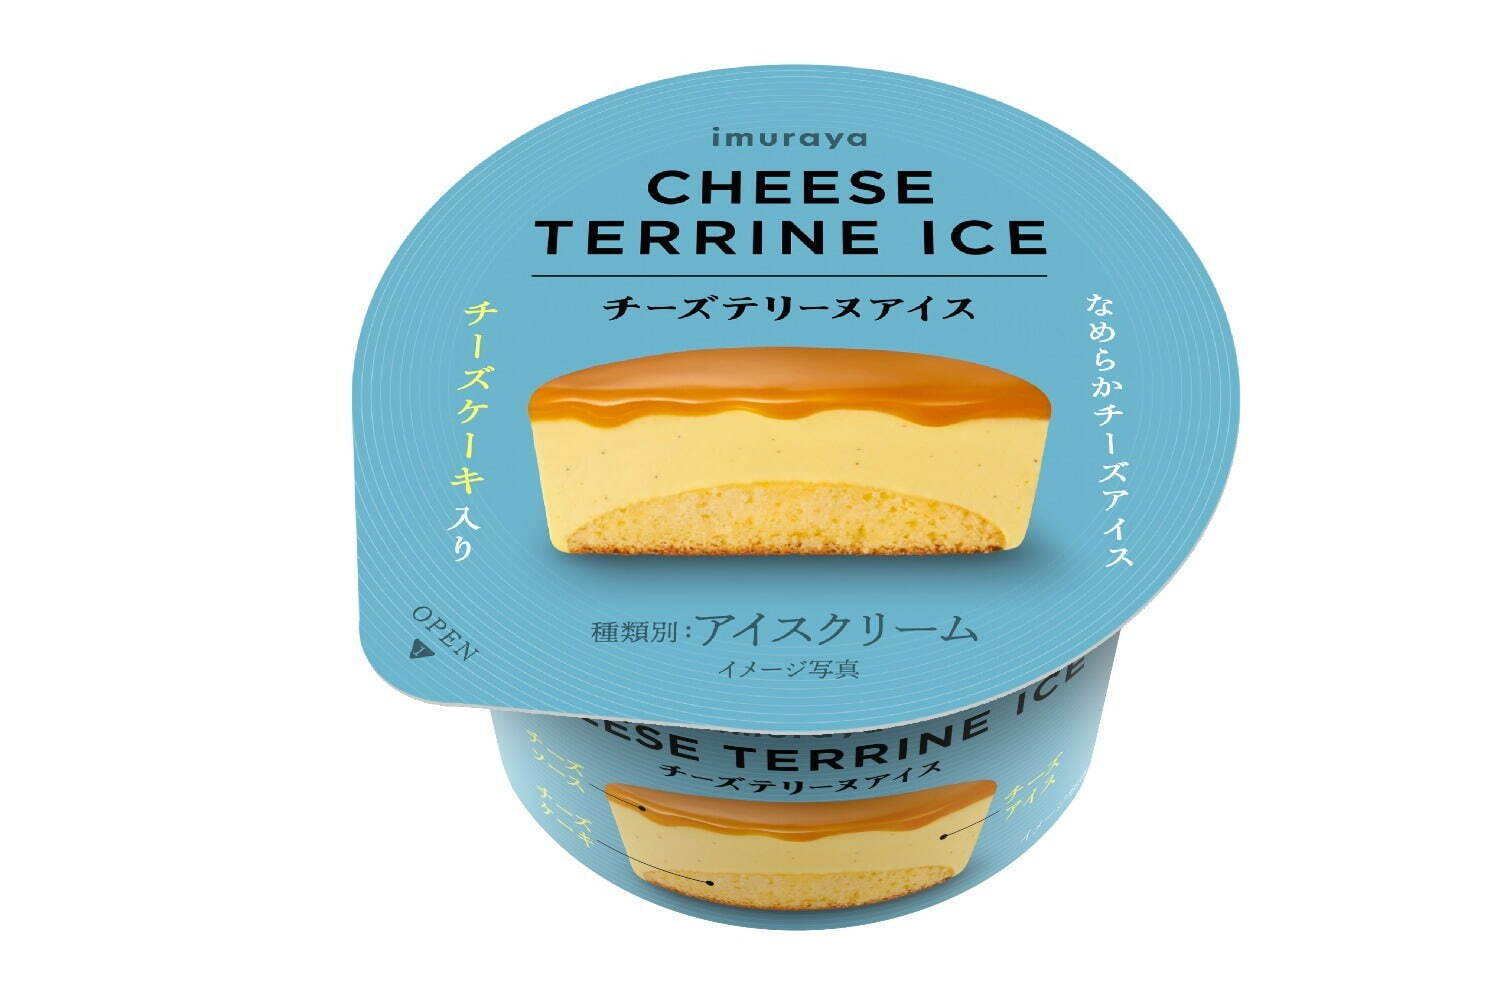 井村屋「チーズテリーヌアイス」濃厚チーズの3層仕立て